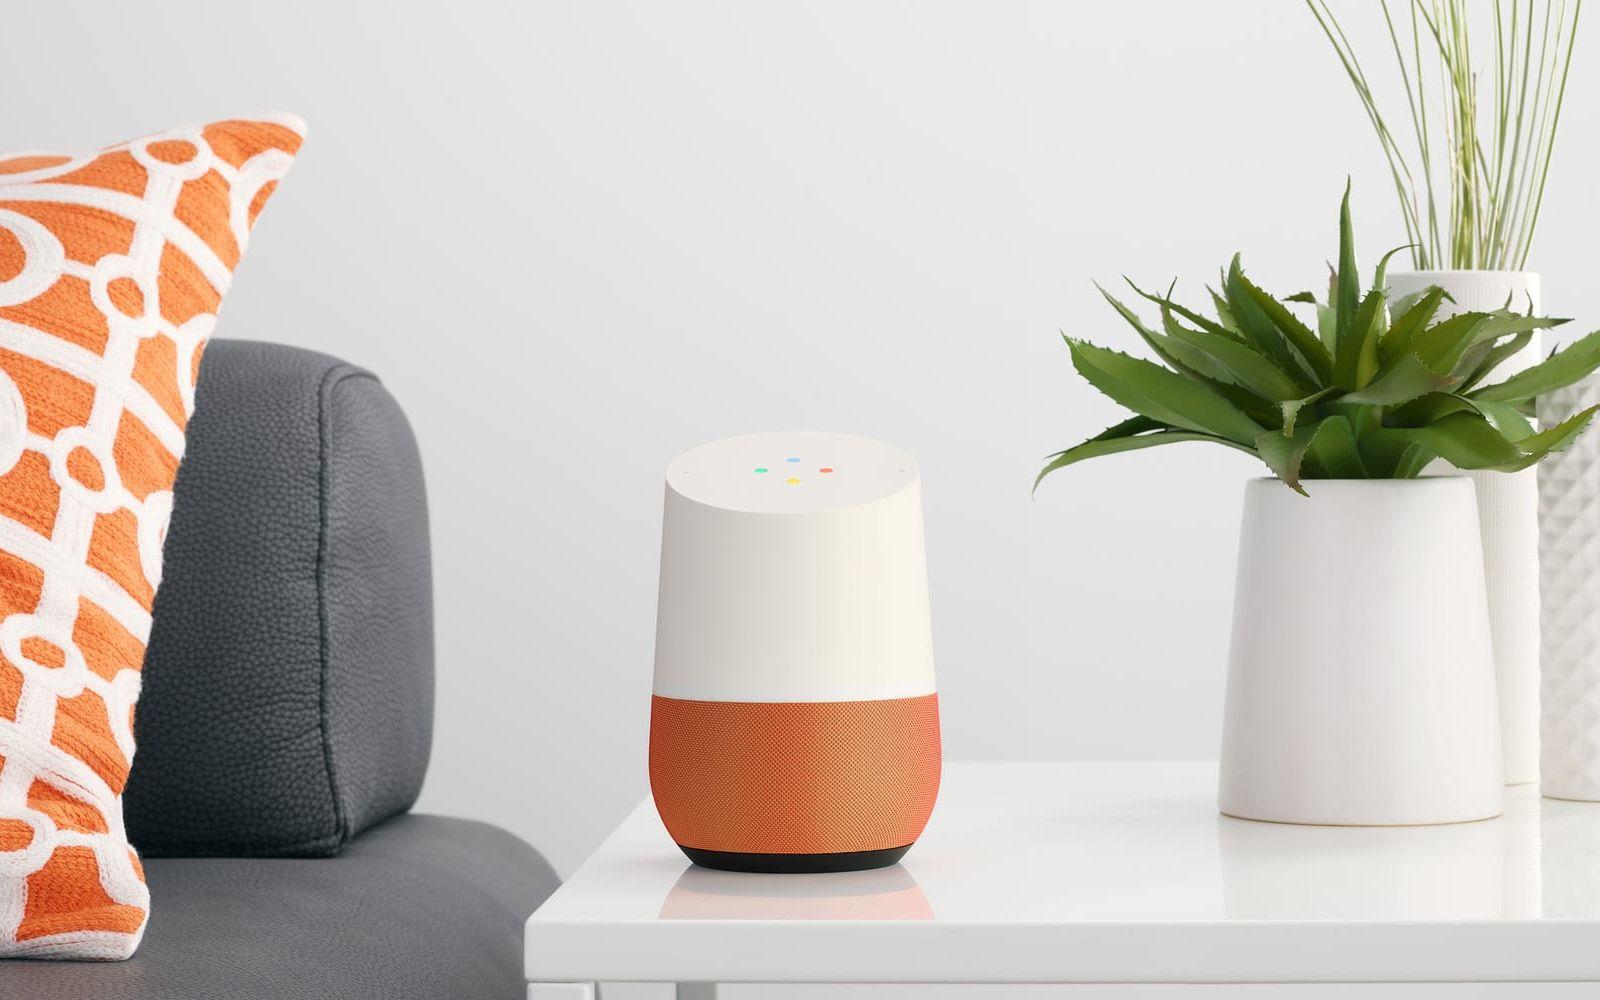 Google lanserade nyligen Google Home som är deras motsvarighet till Echo. Kanske det mest naturliga valet för den som redan använder sig av flera Google-produkter.